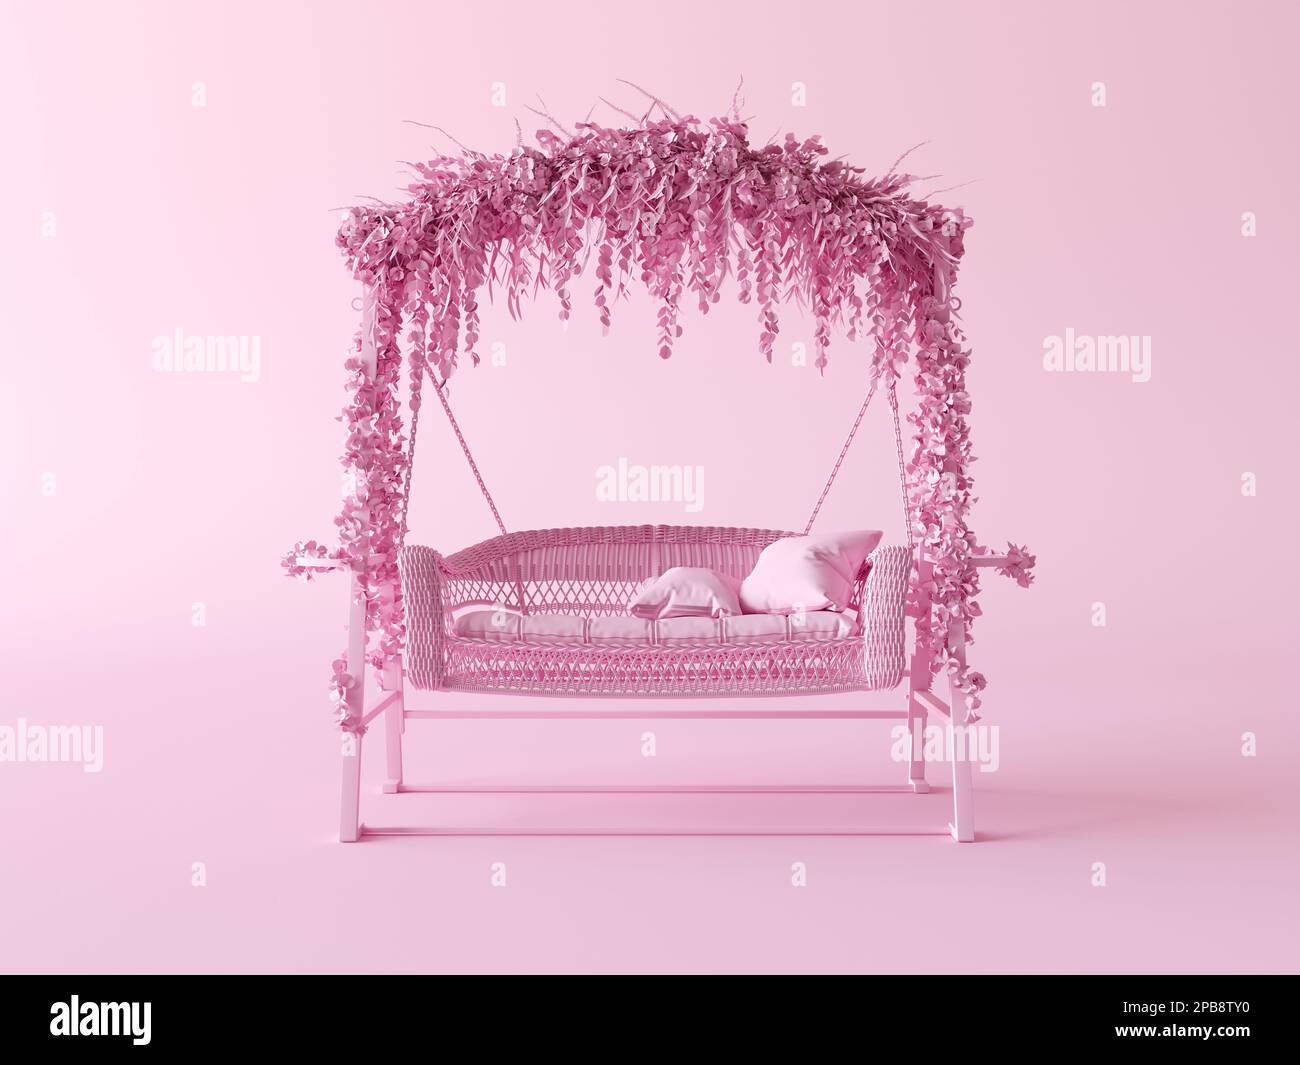 Gartenmöbelgeschäft. Schwingende Gartenbank. Einfarbiger, flacher rosafarbener Hintergrund, 3D-Rendering für Web- und Social-Media-Nutzung. Stockfoto